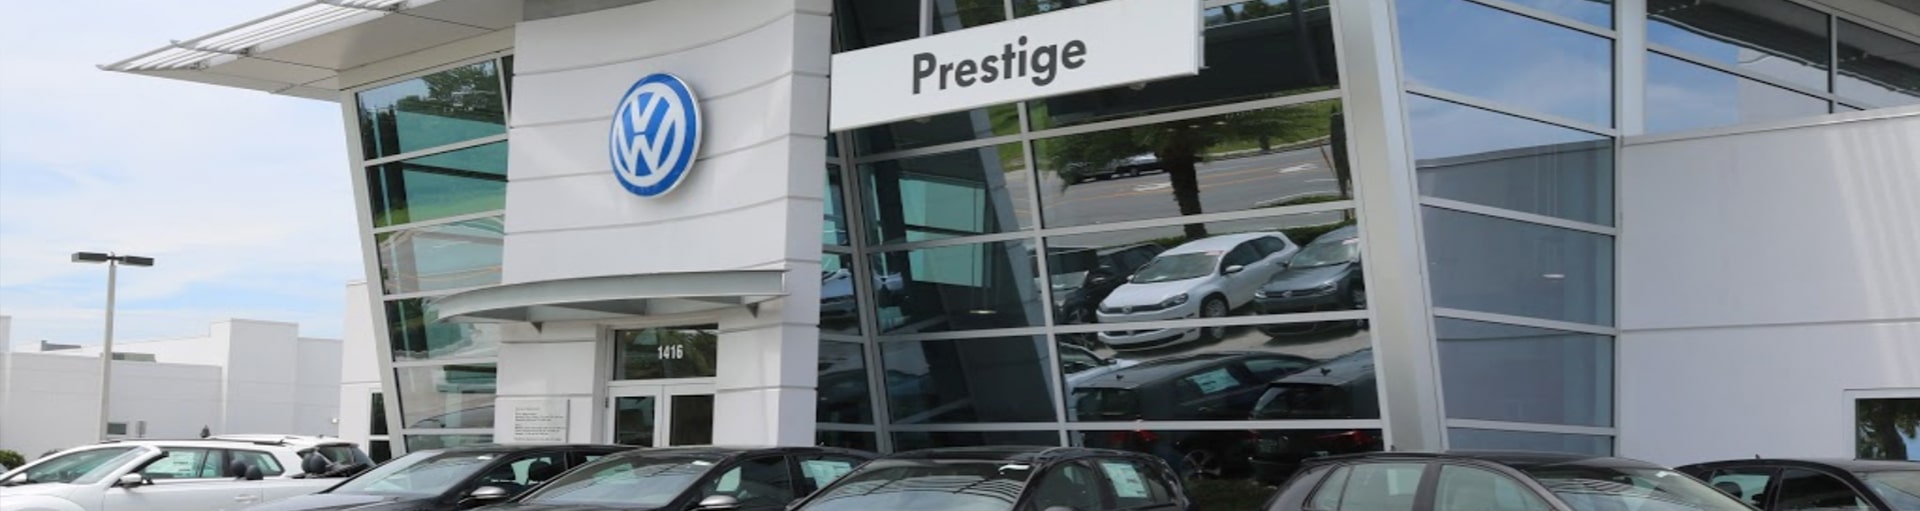 Prestige Volkswagen of Melbourne A/C Recharge